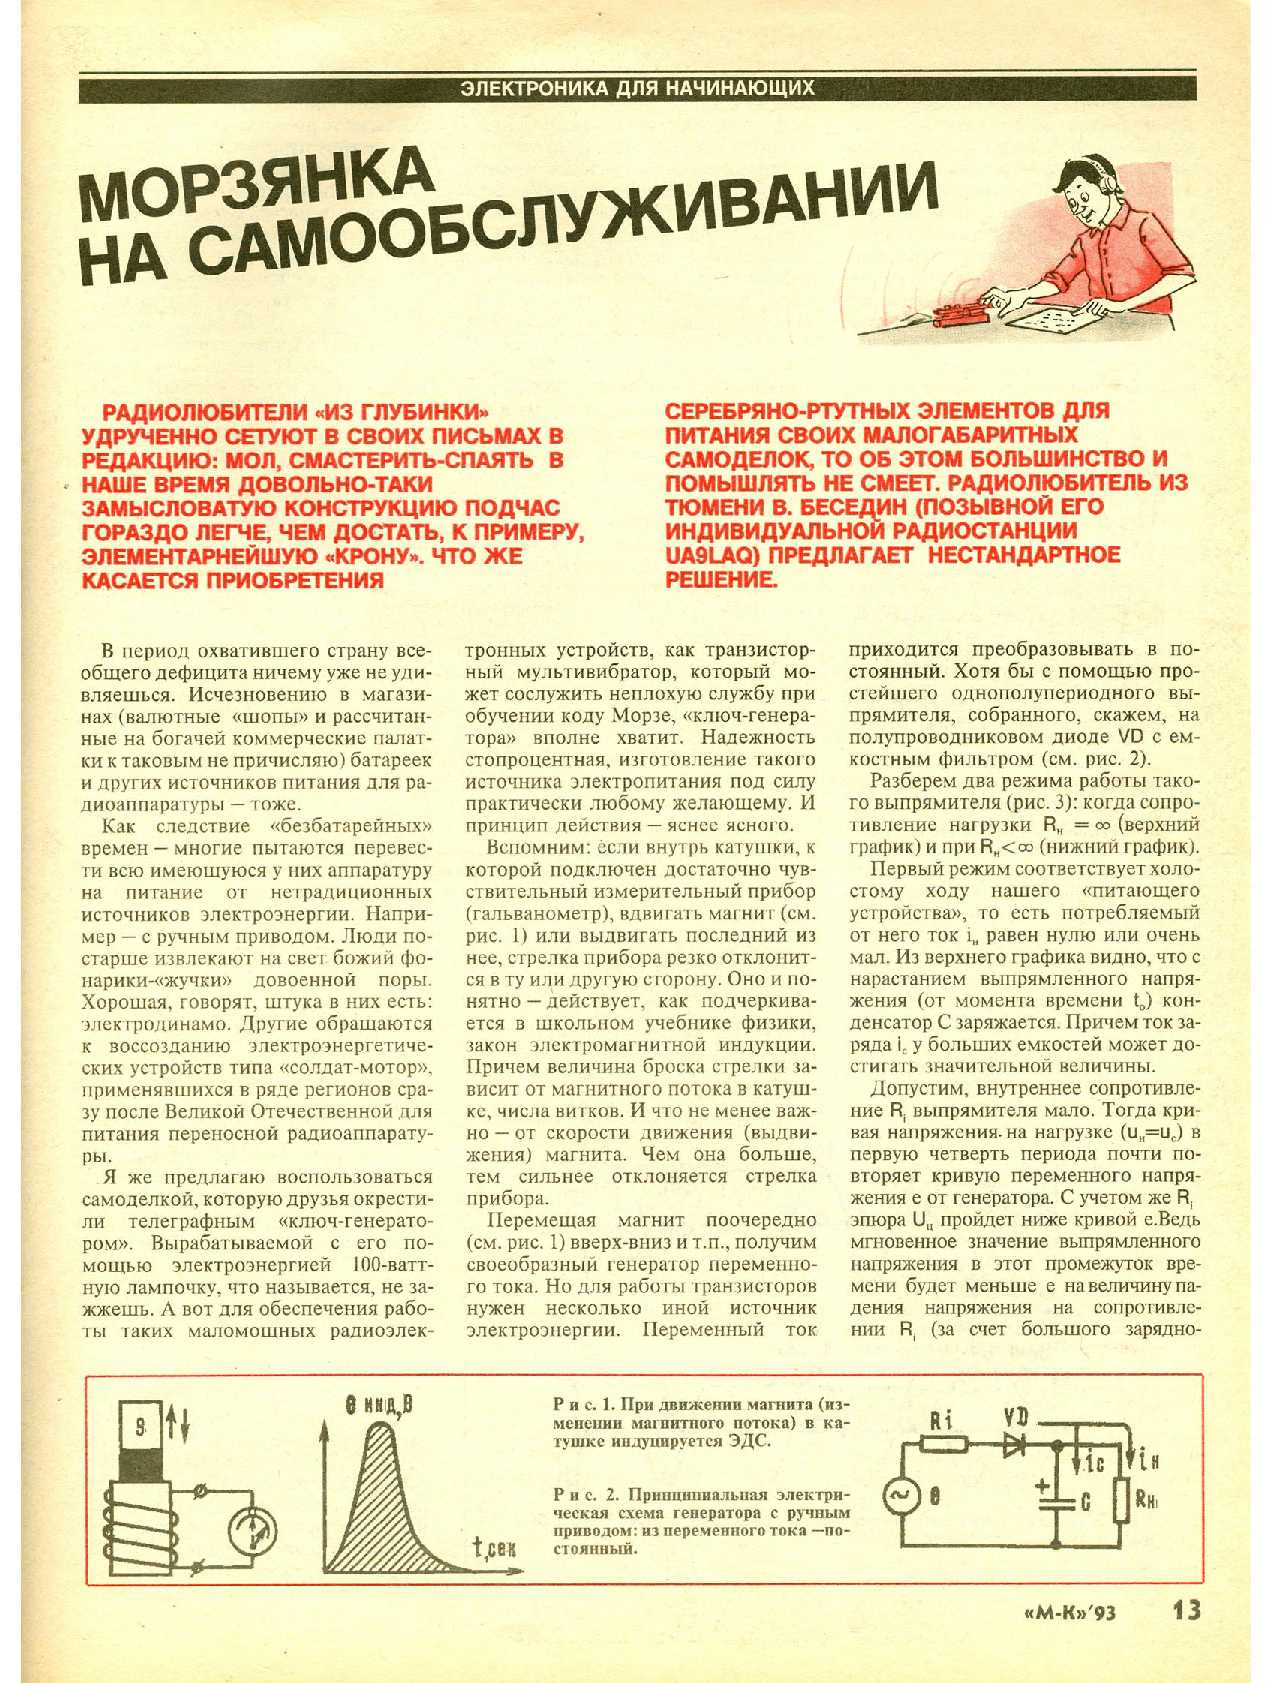 МК 5, 1993, 13 c.